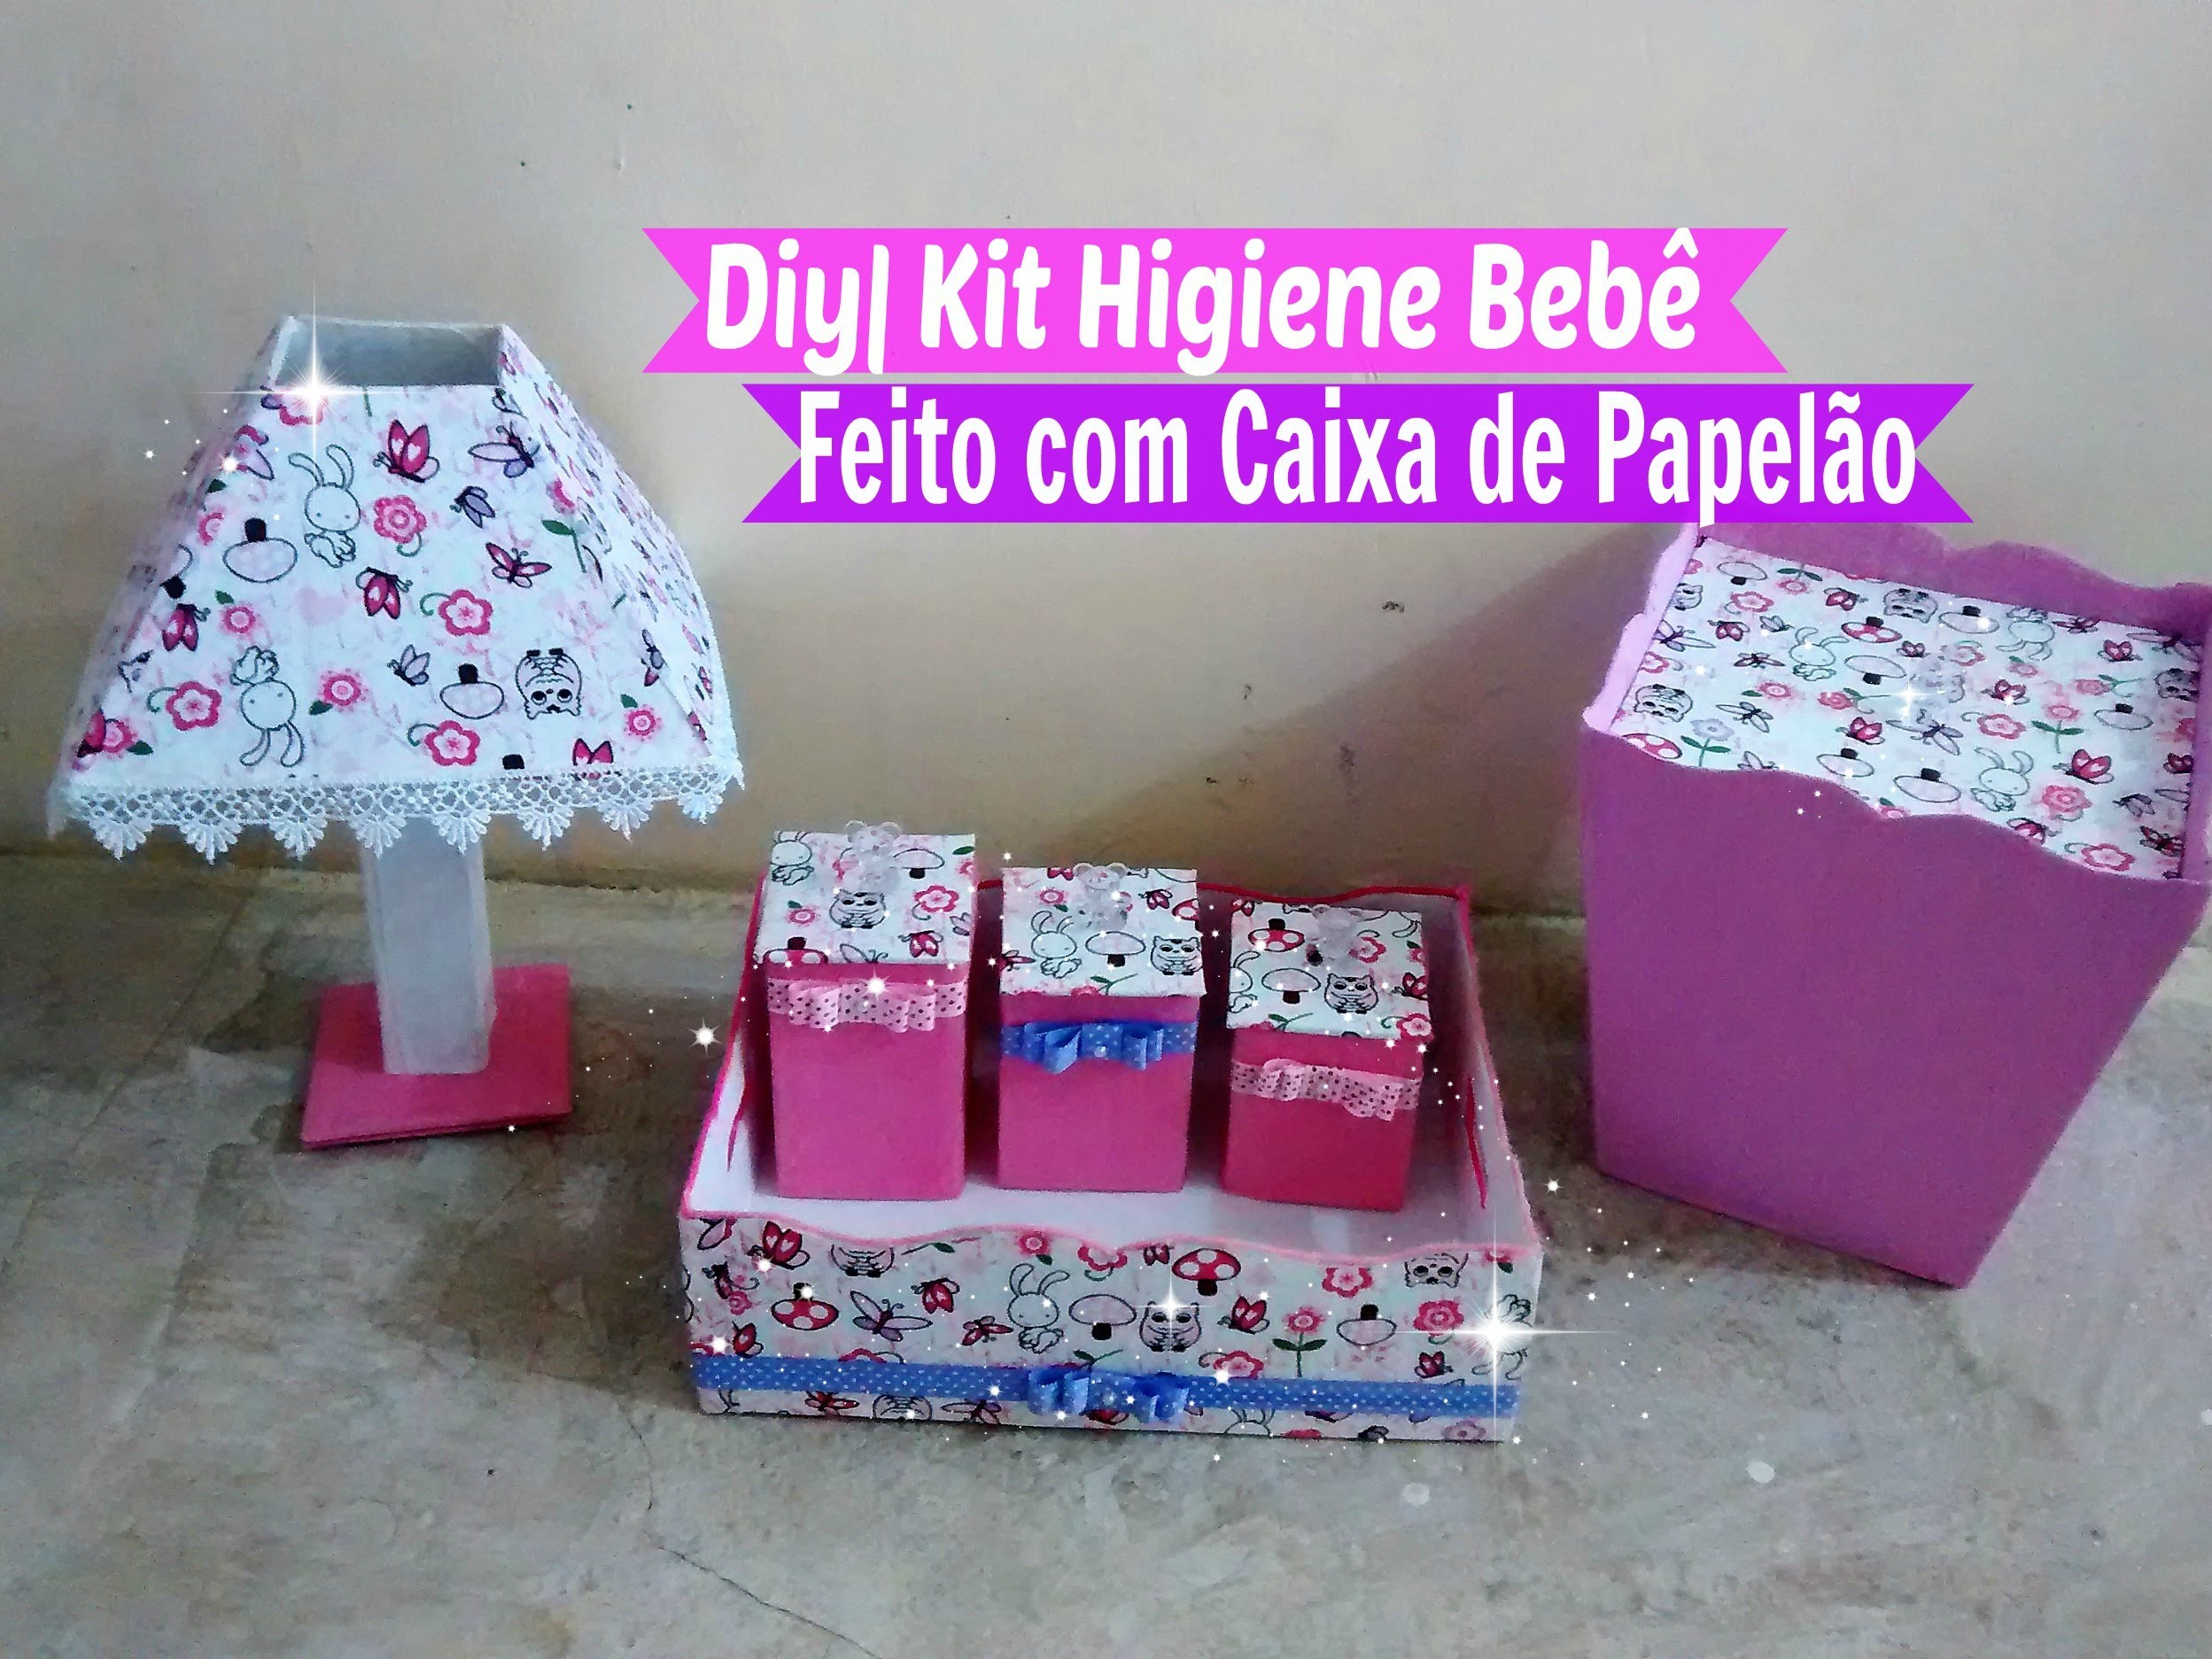 Diy | Kit Higiene Bebê Feito com Caixa de Papelão. Por Carla Oliveira